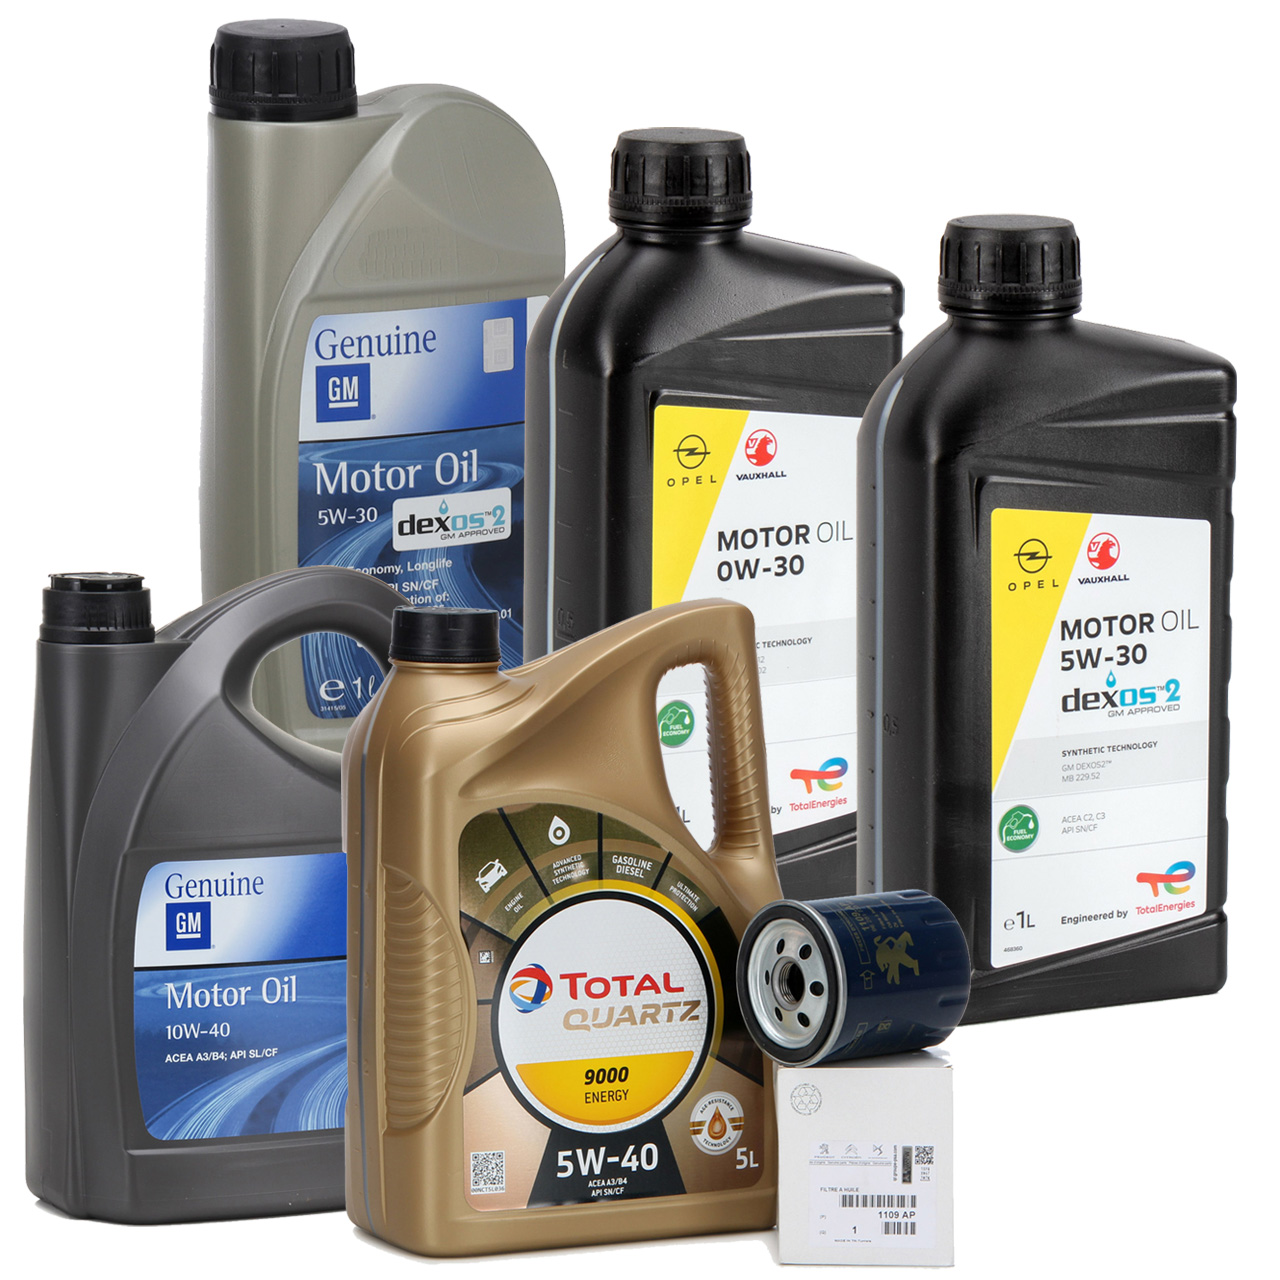 Peugeot Motoröl - Welches Öl ist das richtige für Ihr Auto?